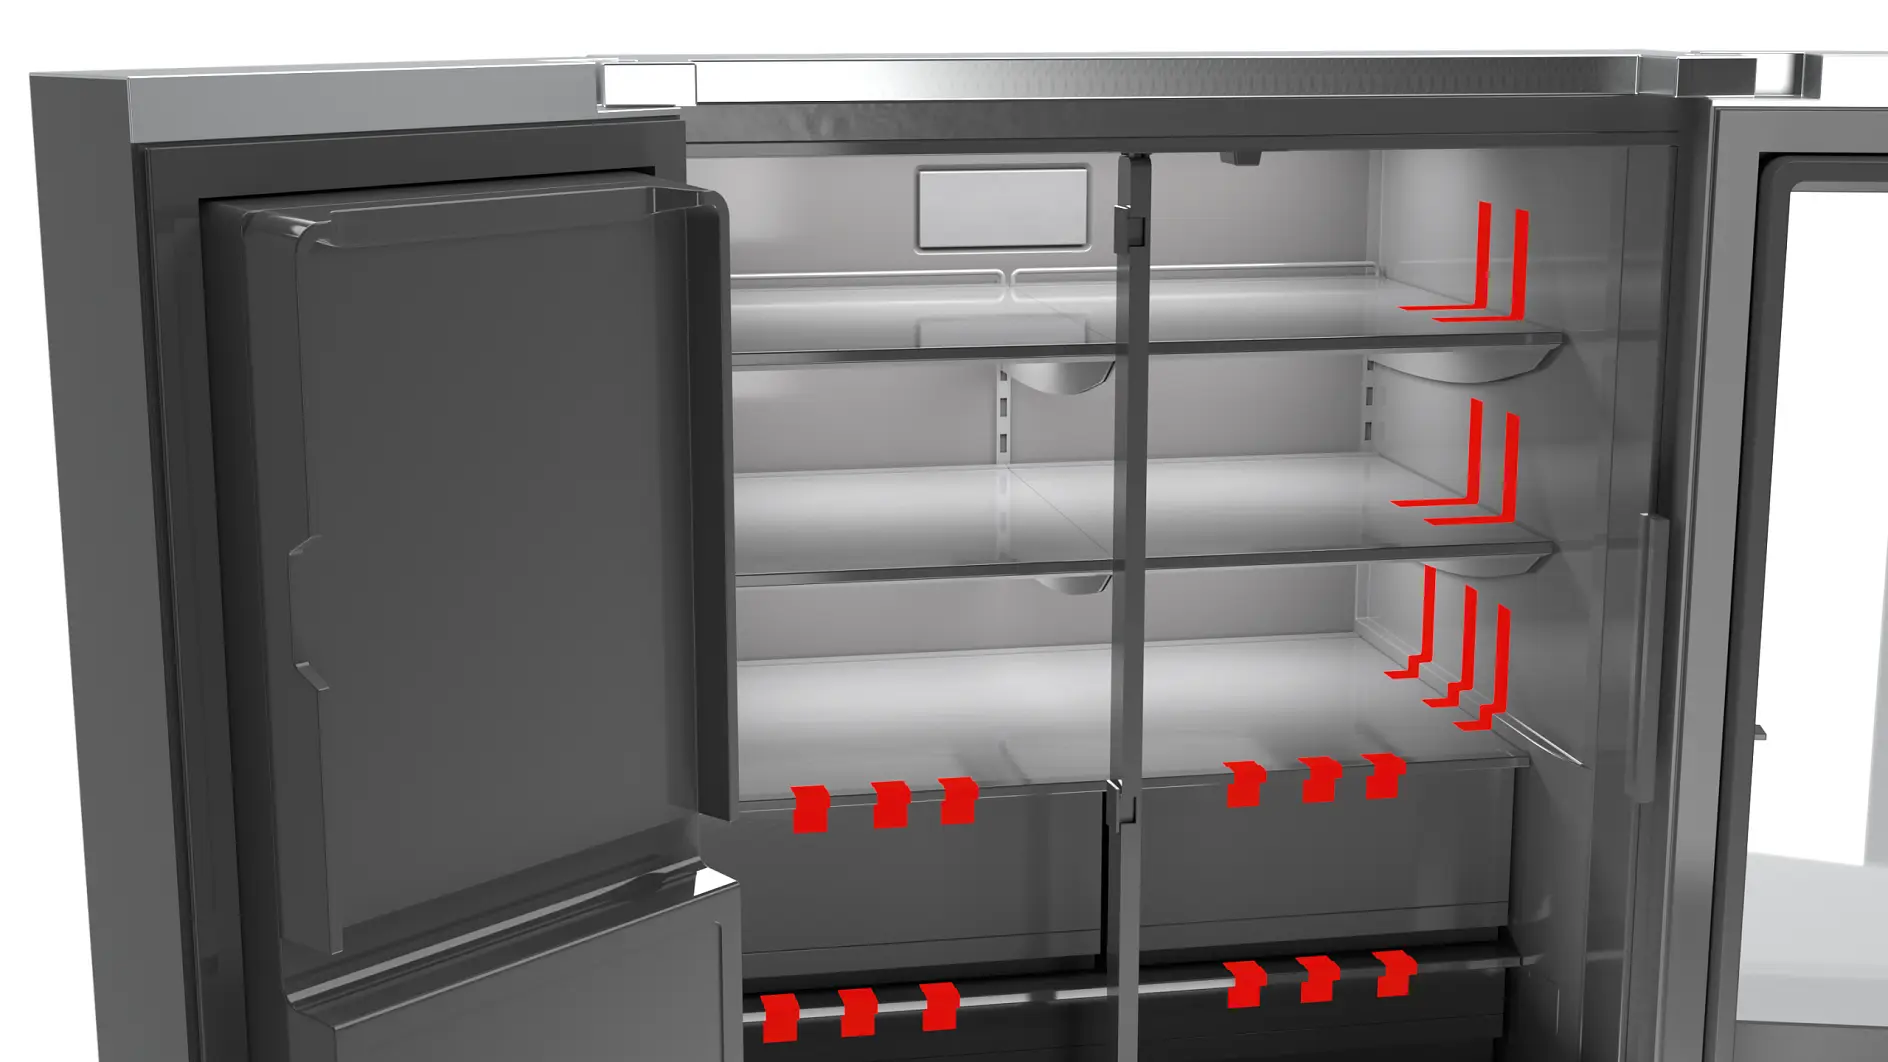 Appareils électroménagers réfrigérateur cerclage transport sécurisation illustration